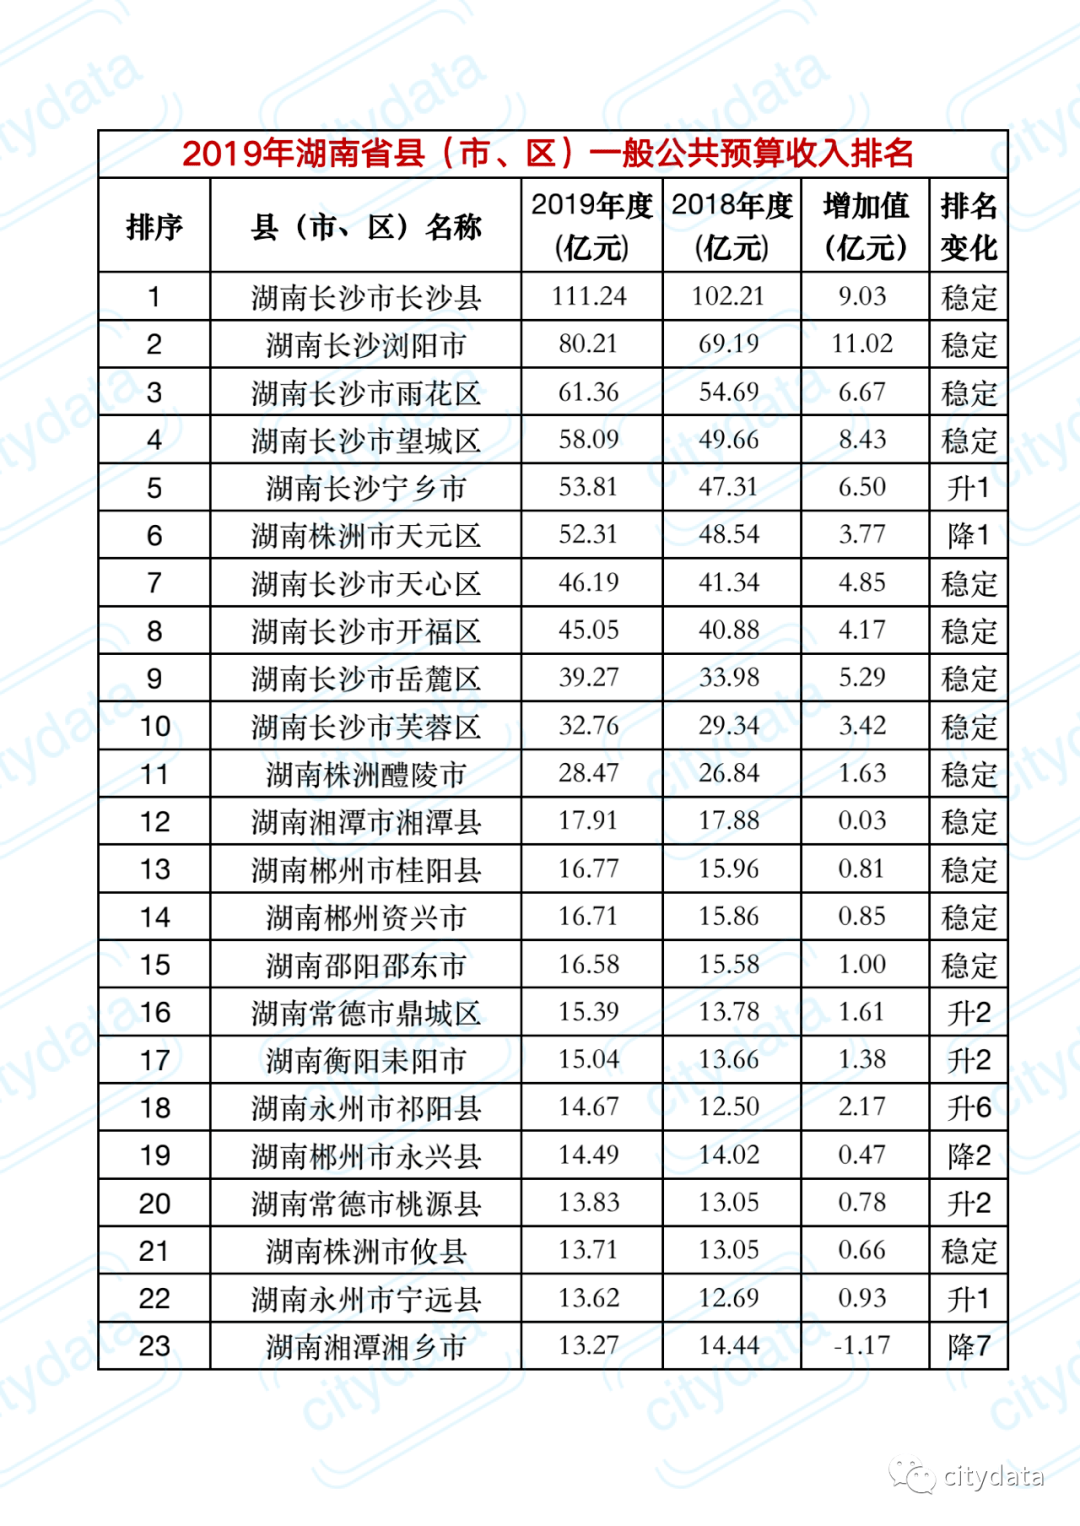 
2019年湖南省县市区一般公共预算收入排名 长沙县稳居第一